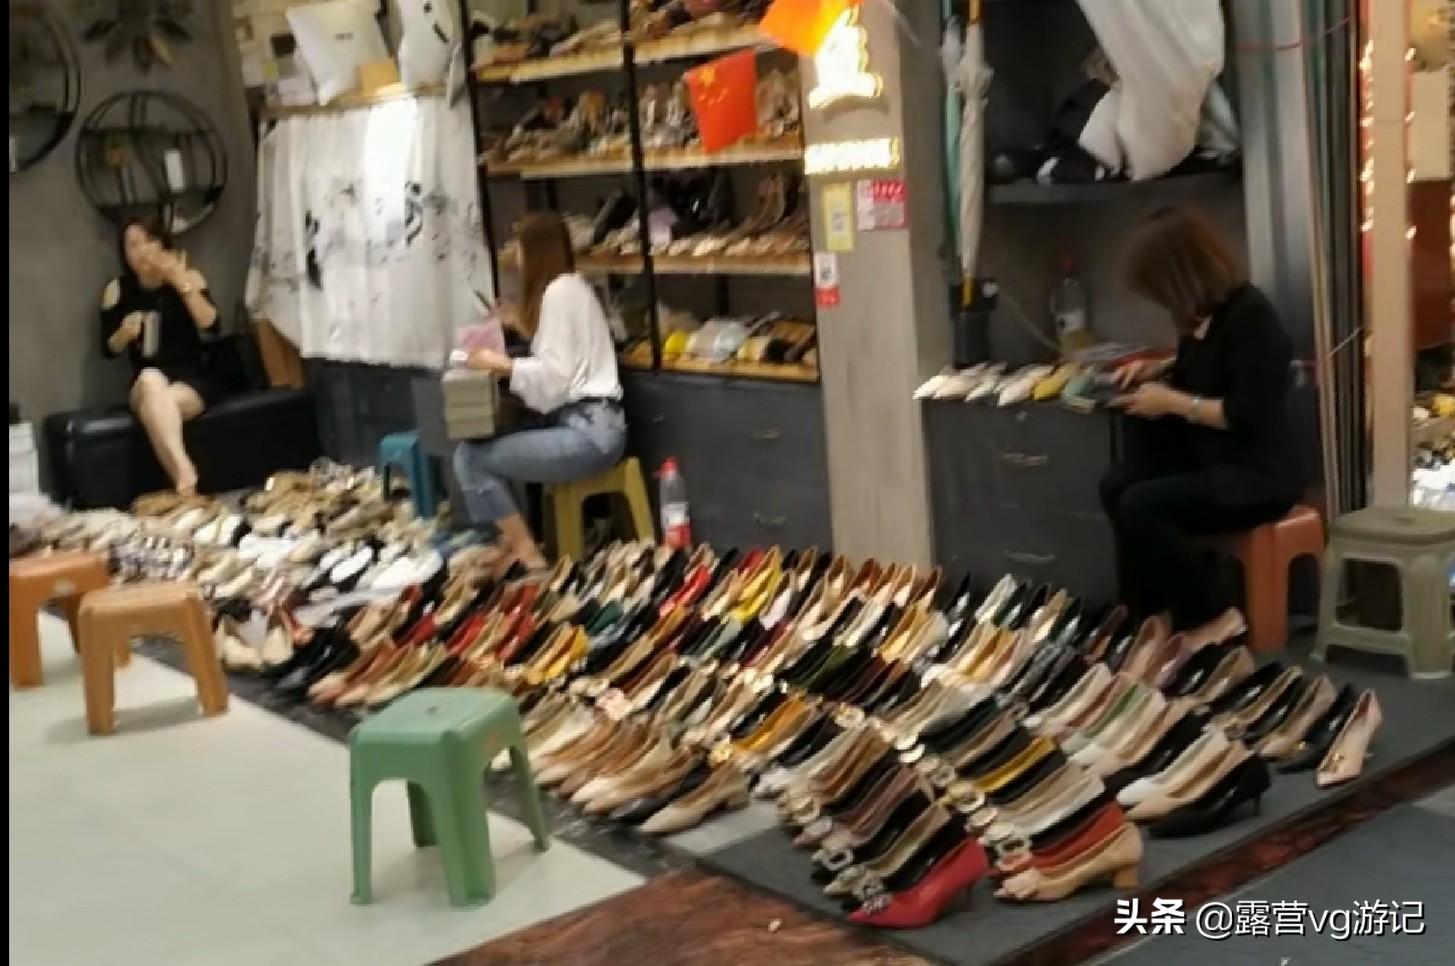 鞋子批发厂家货源怎么找？最新中国鞋子货源市场“前十进货渠道”